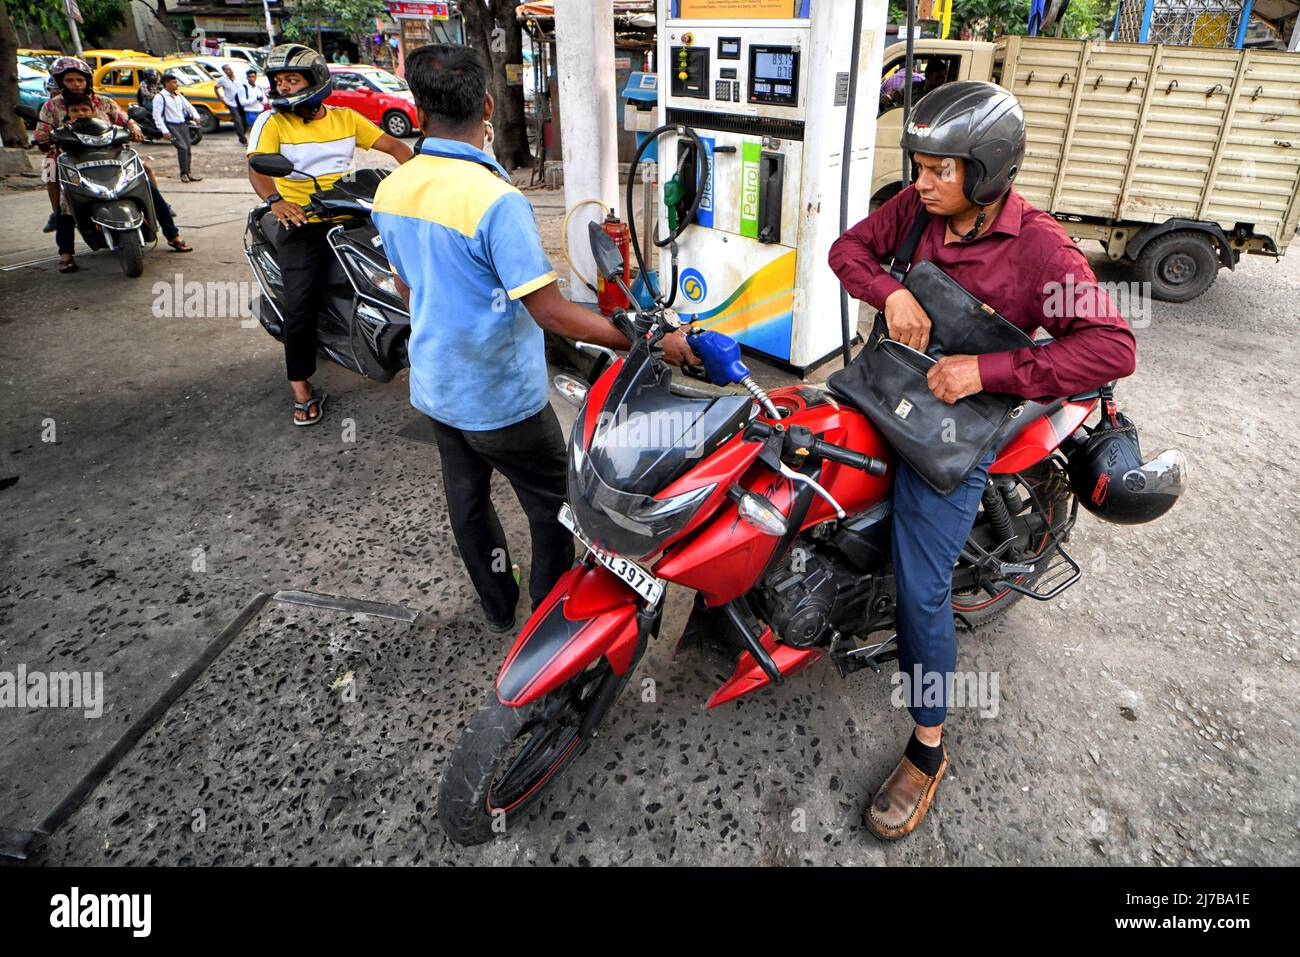 Les gens ont vu se remplir leurs Motos à une pompe à essence. Les prix de l' essence et du diesel augmentent continuellement en Inde, ce qui a un impact  sur la guerre